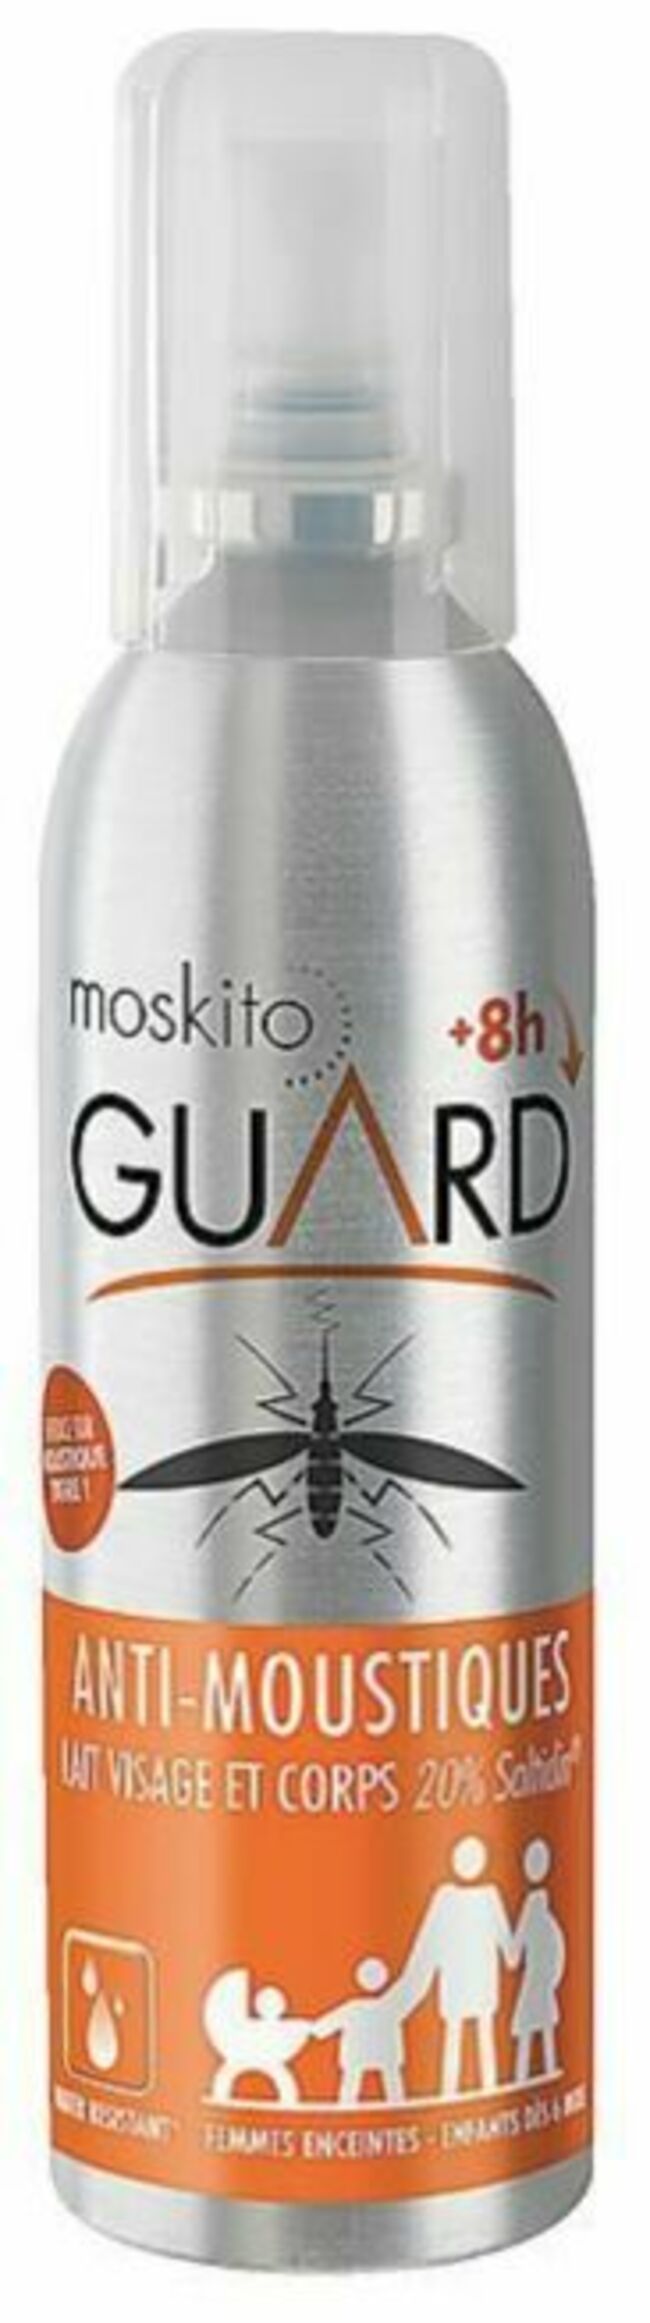 Spray anti-moustiques lait visage & corps Moskito Guard – 8,99 € pour 75 ml, en pharmacie et parapharmacie ainsi que sur moskitoguard.fr. 